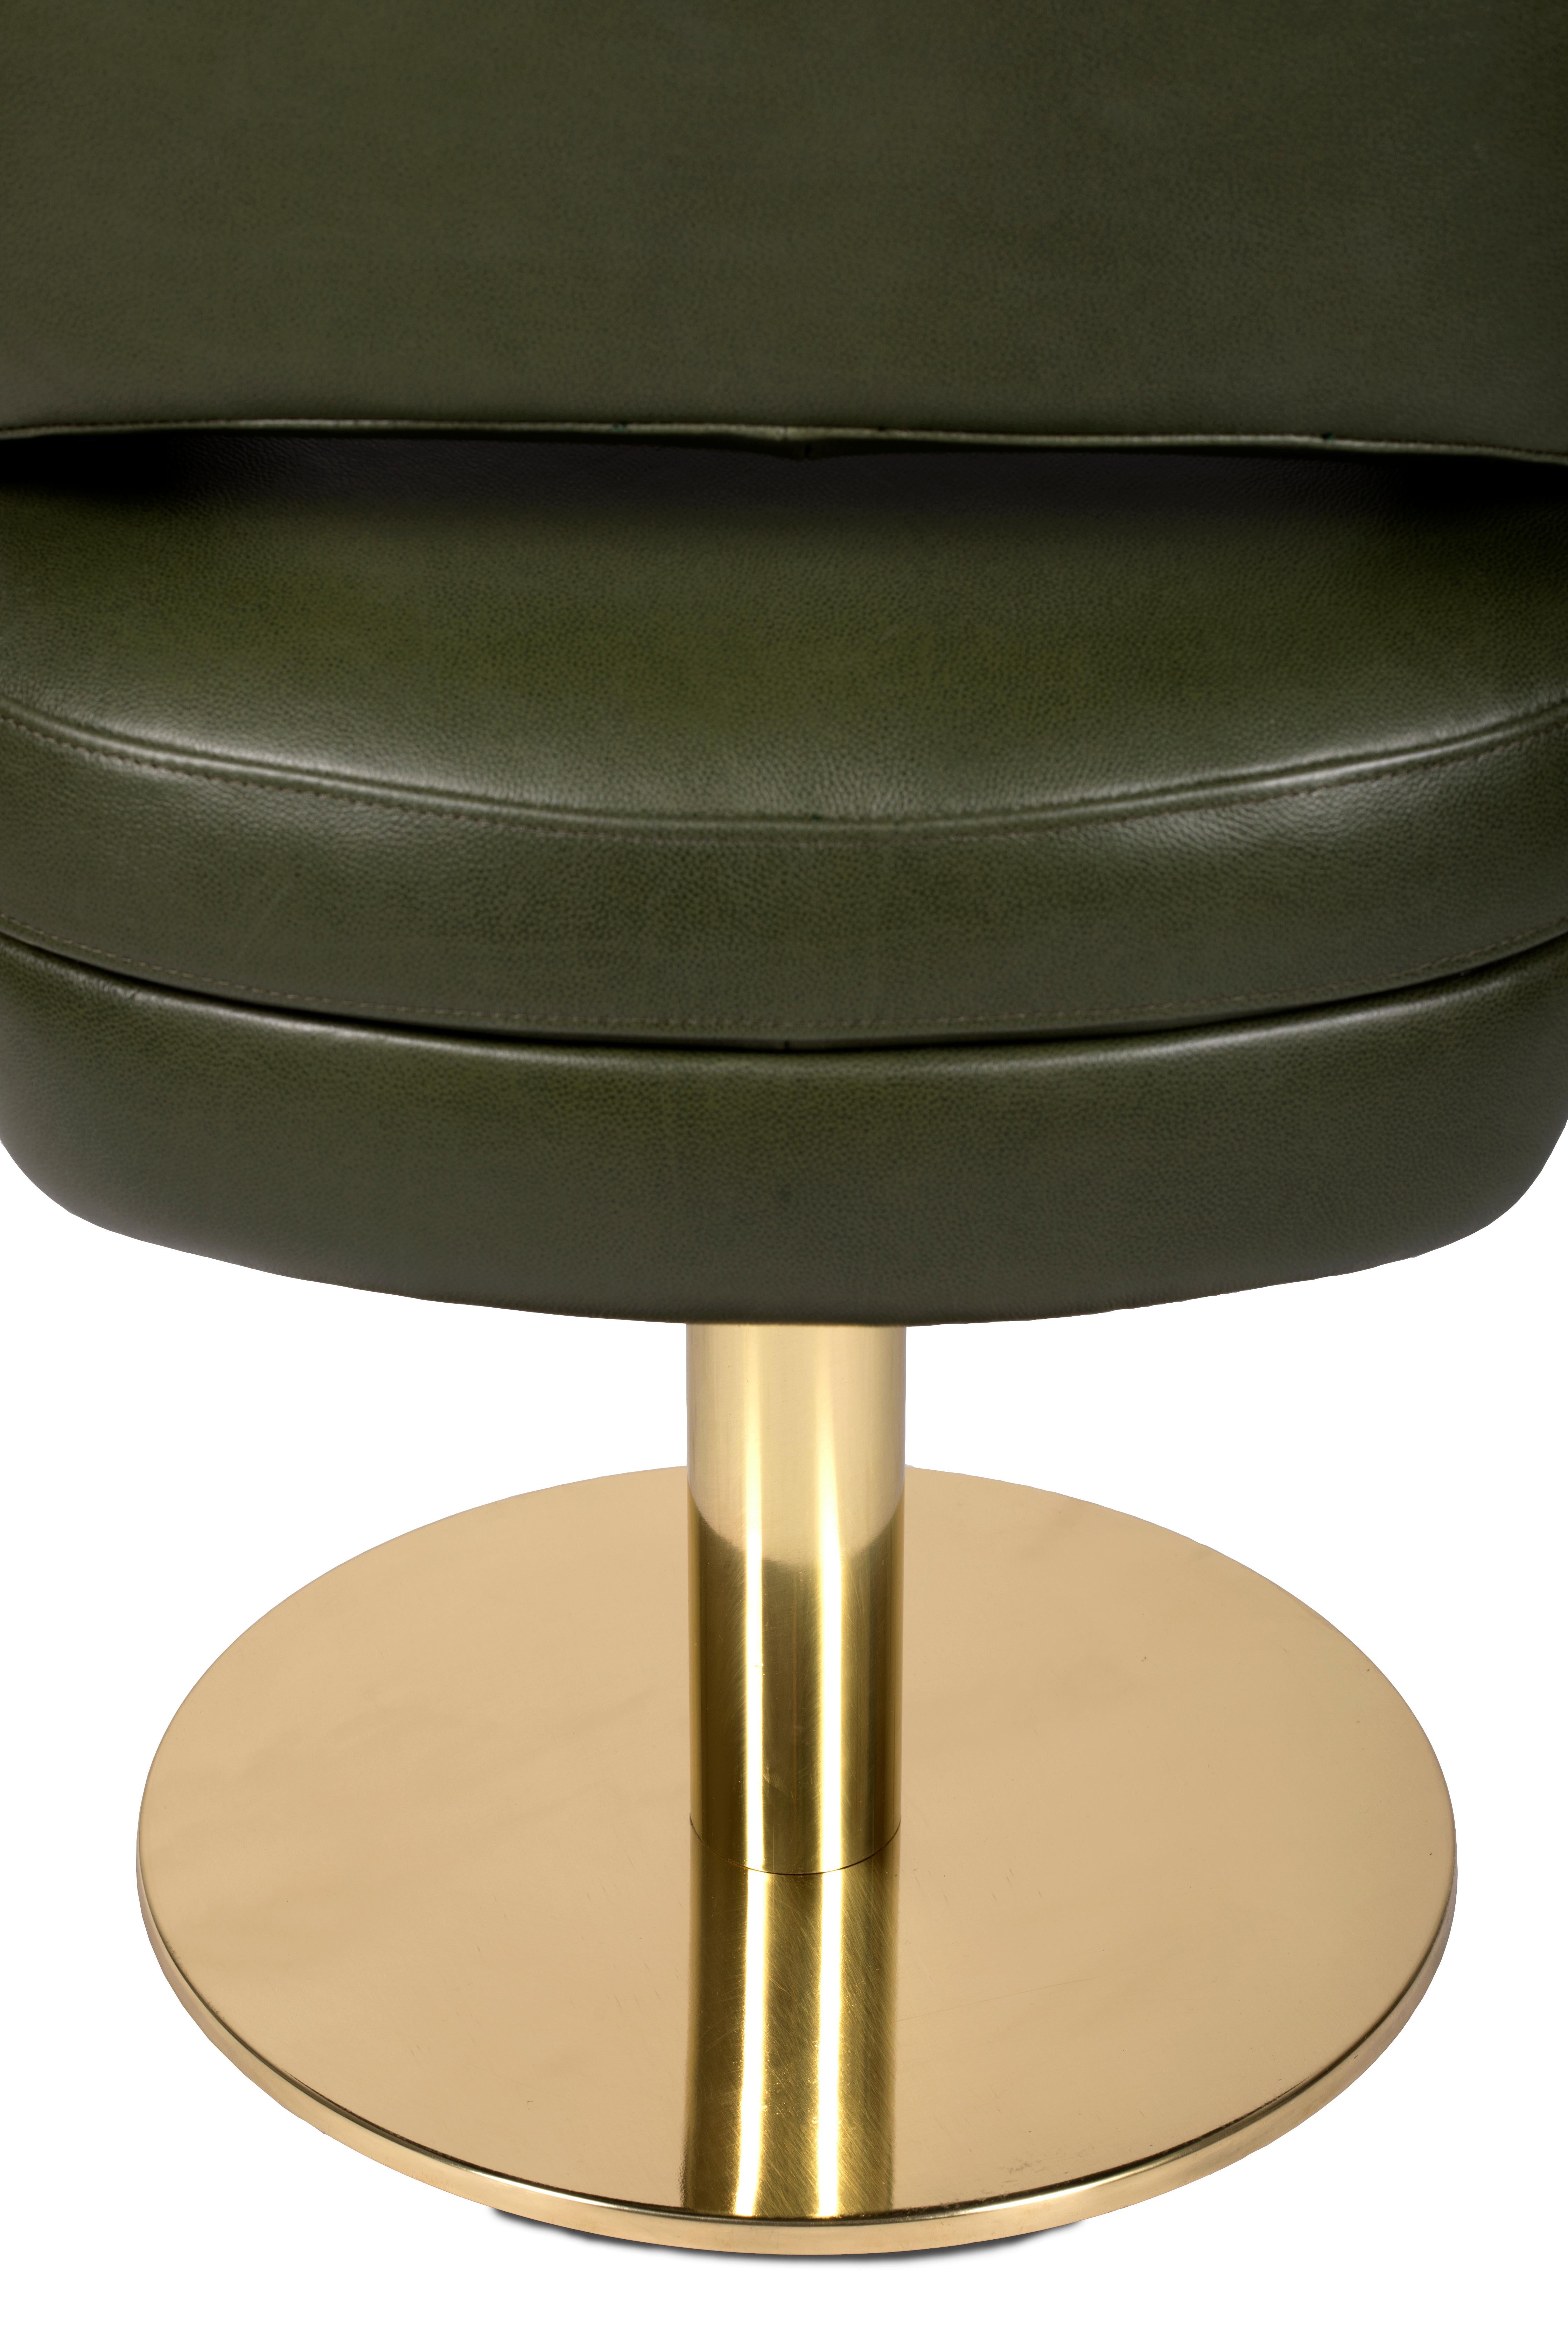 Moderner Esszimmerstuhl Russel mit Messinggestell von Essential Home

Der Mid-Century Modern Russel Brass Base Dining Chair hat ein rundes poliertes Messinggestell und den zeitlos verführerischen Samt, der über einen bequemen Schaumstoffrahmen